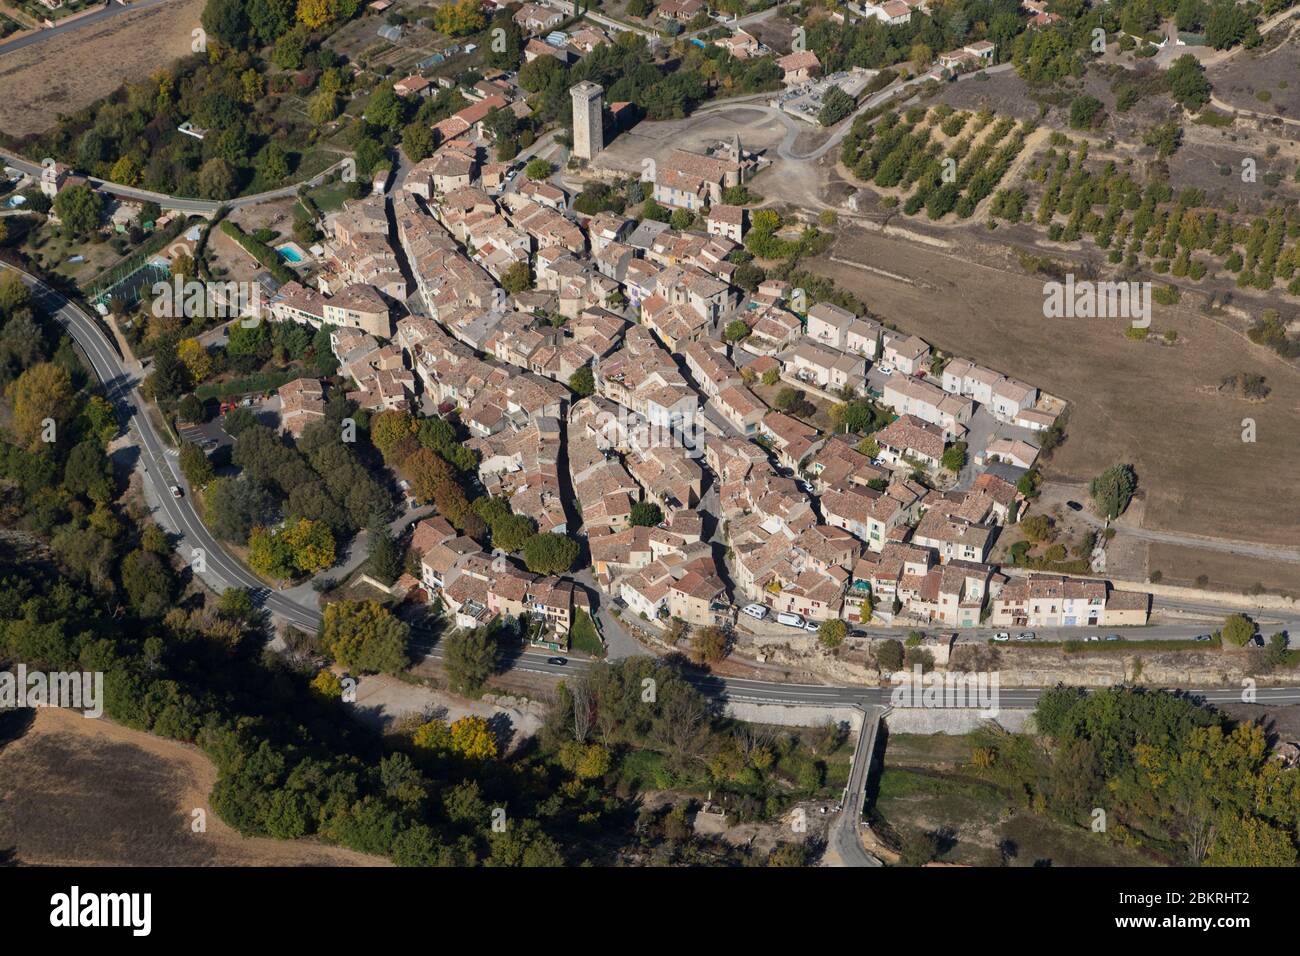 France, Alpes de Haute Provence, Saint Martin de Bromes (aerial view) Stock Photo